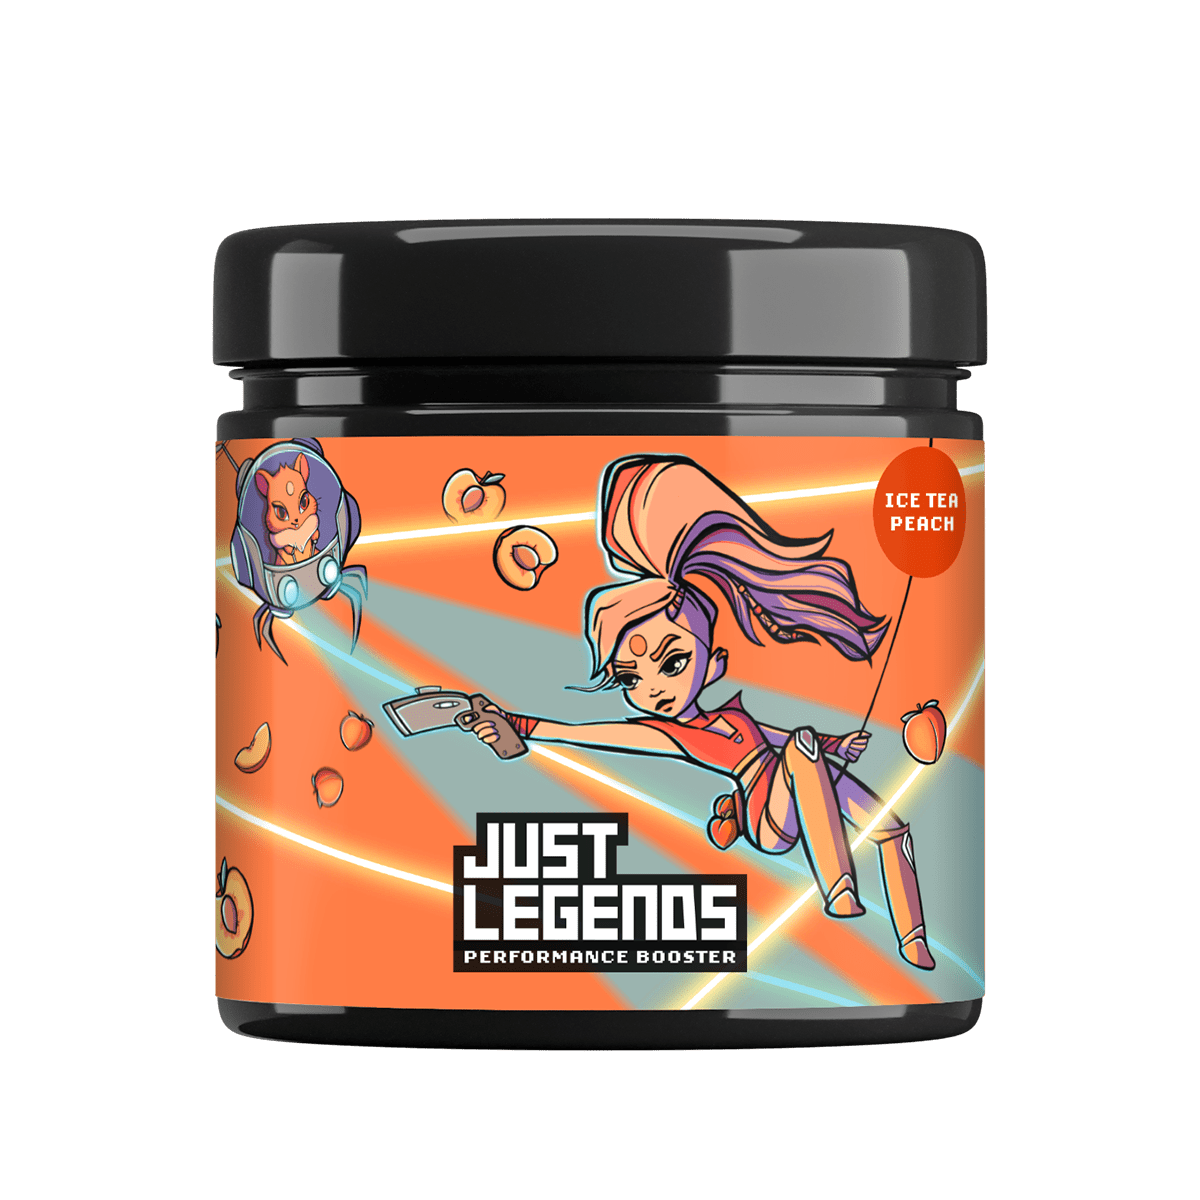 Just Legends Performance Booster Ice Tea Peach | Funktionaler, veganer Performance Booster auf Pulverbasis ohne Zucker, mit wenig Kalorien, vielen Vitaminen und natürlichen Aromen.